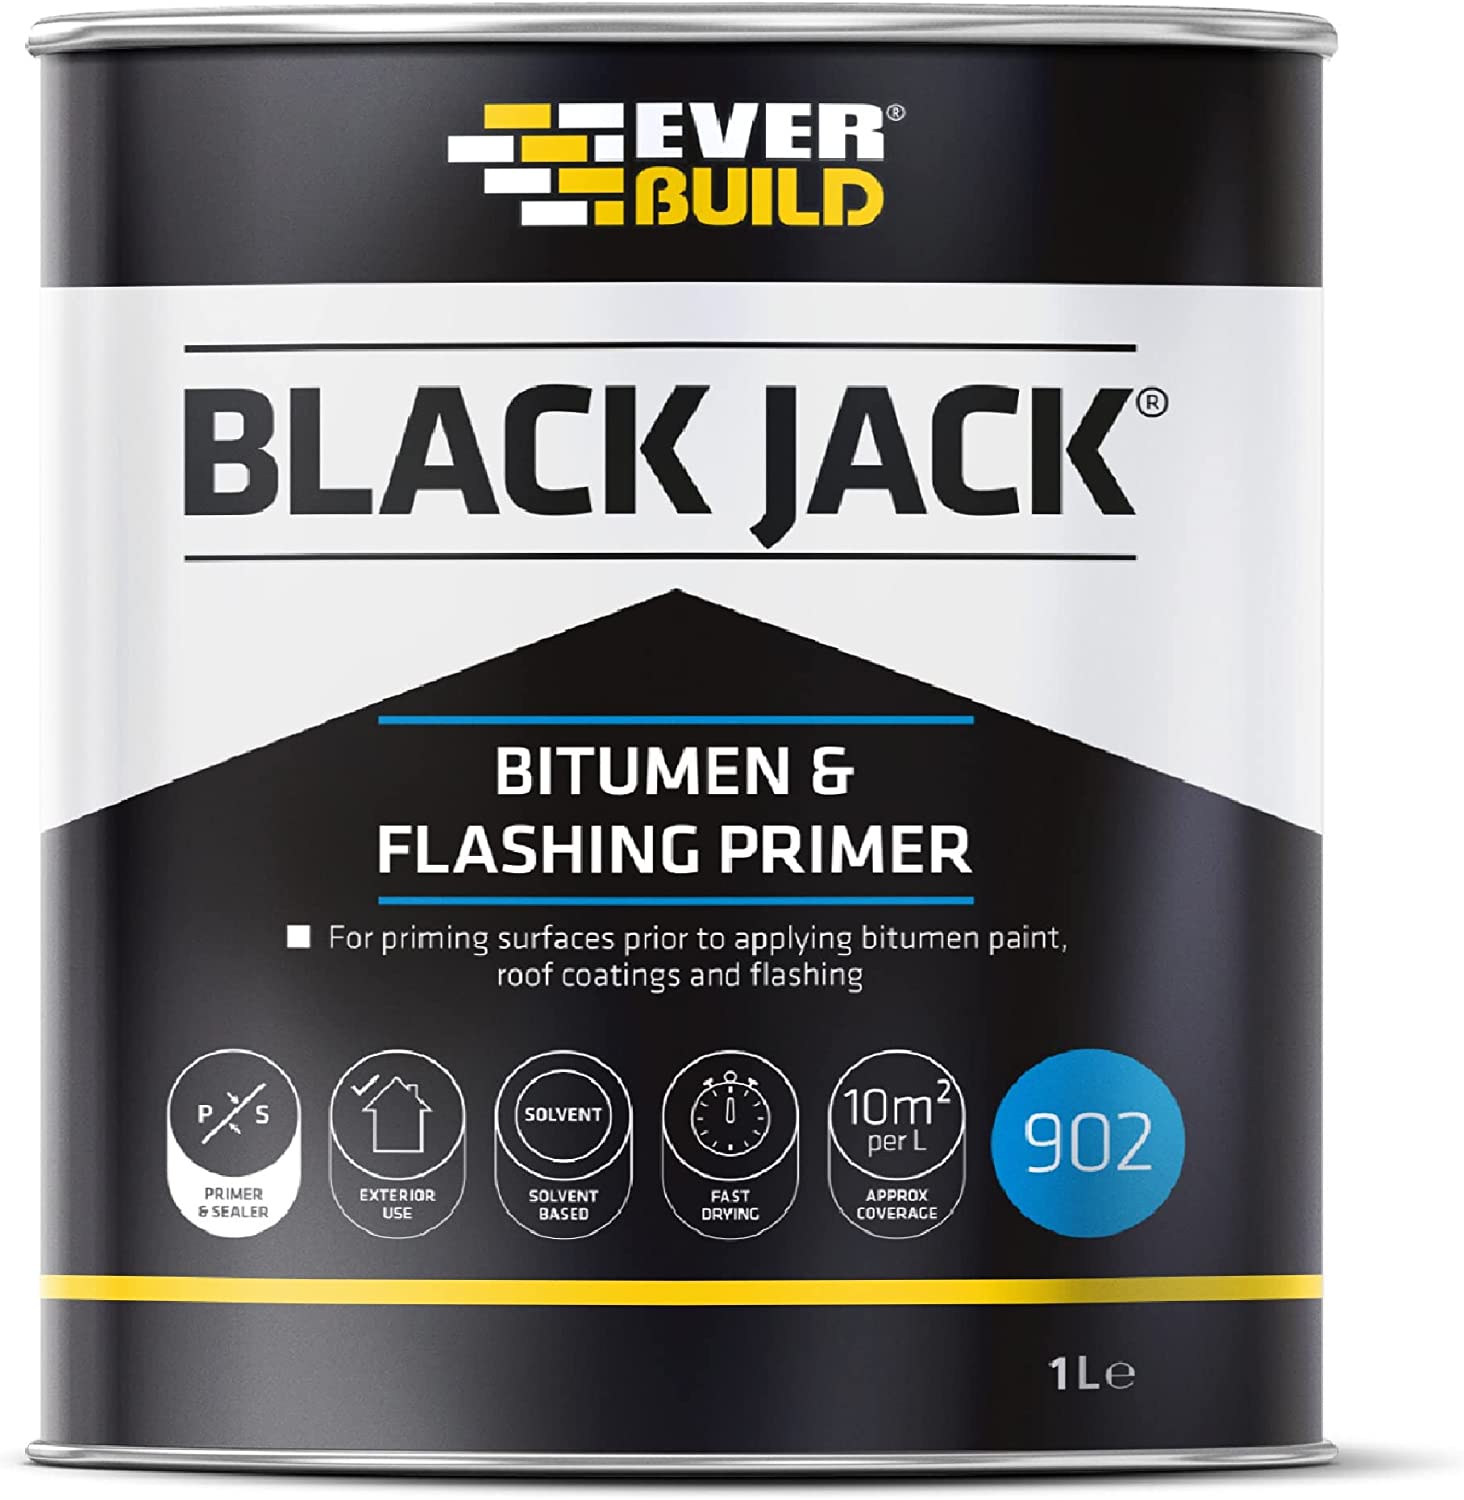 Everbuild Black Jack 902 Bitumen Primer 1Ltr